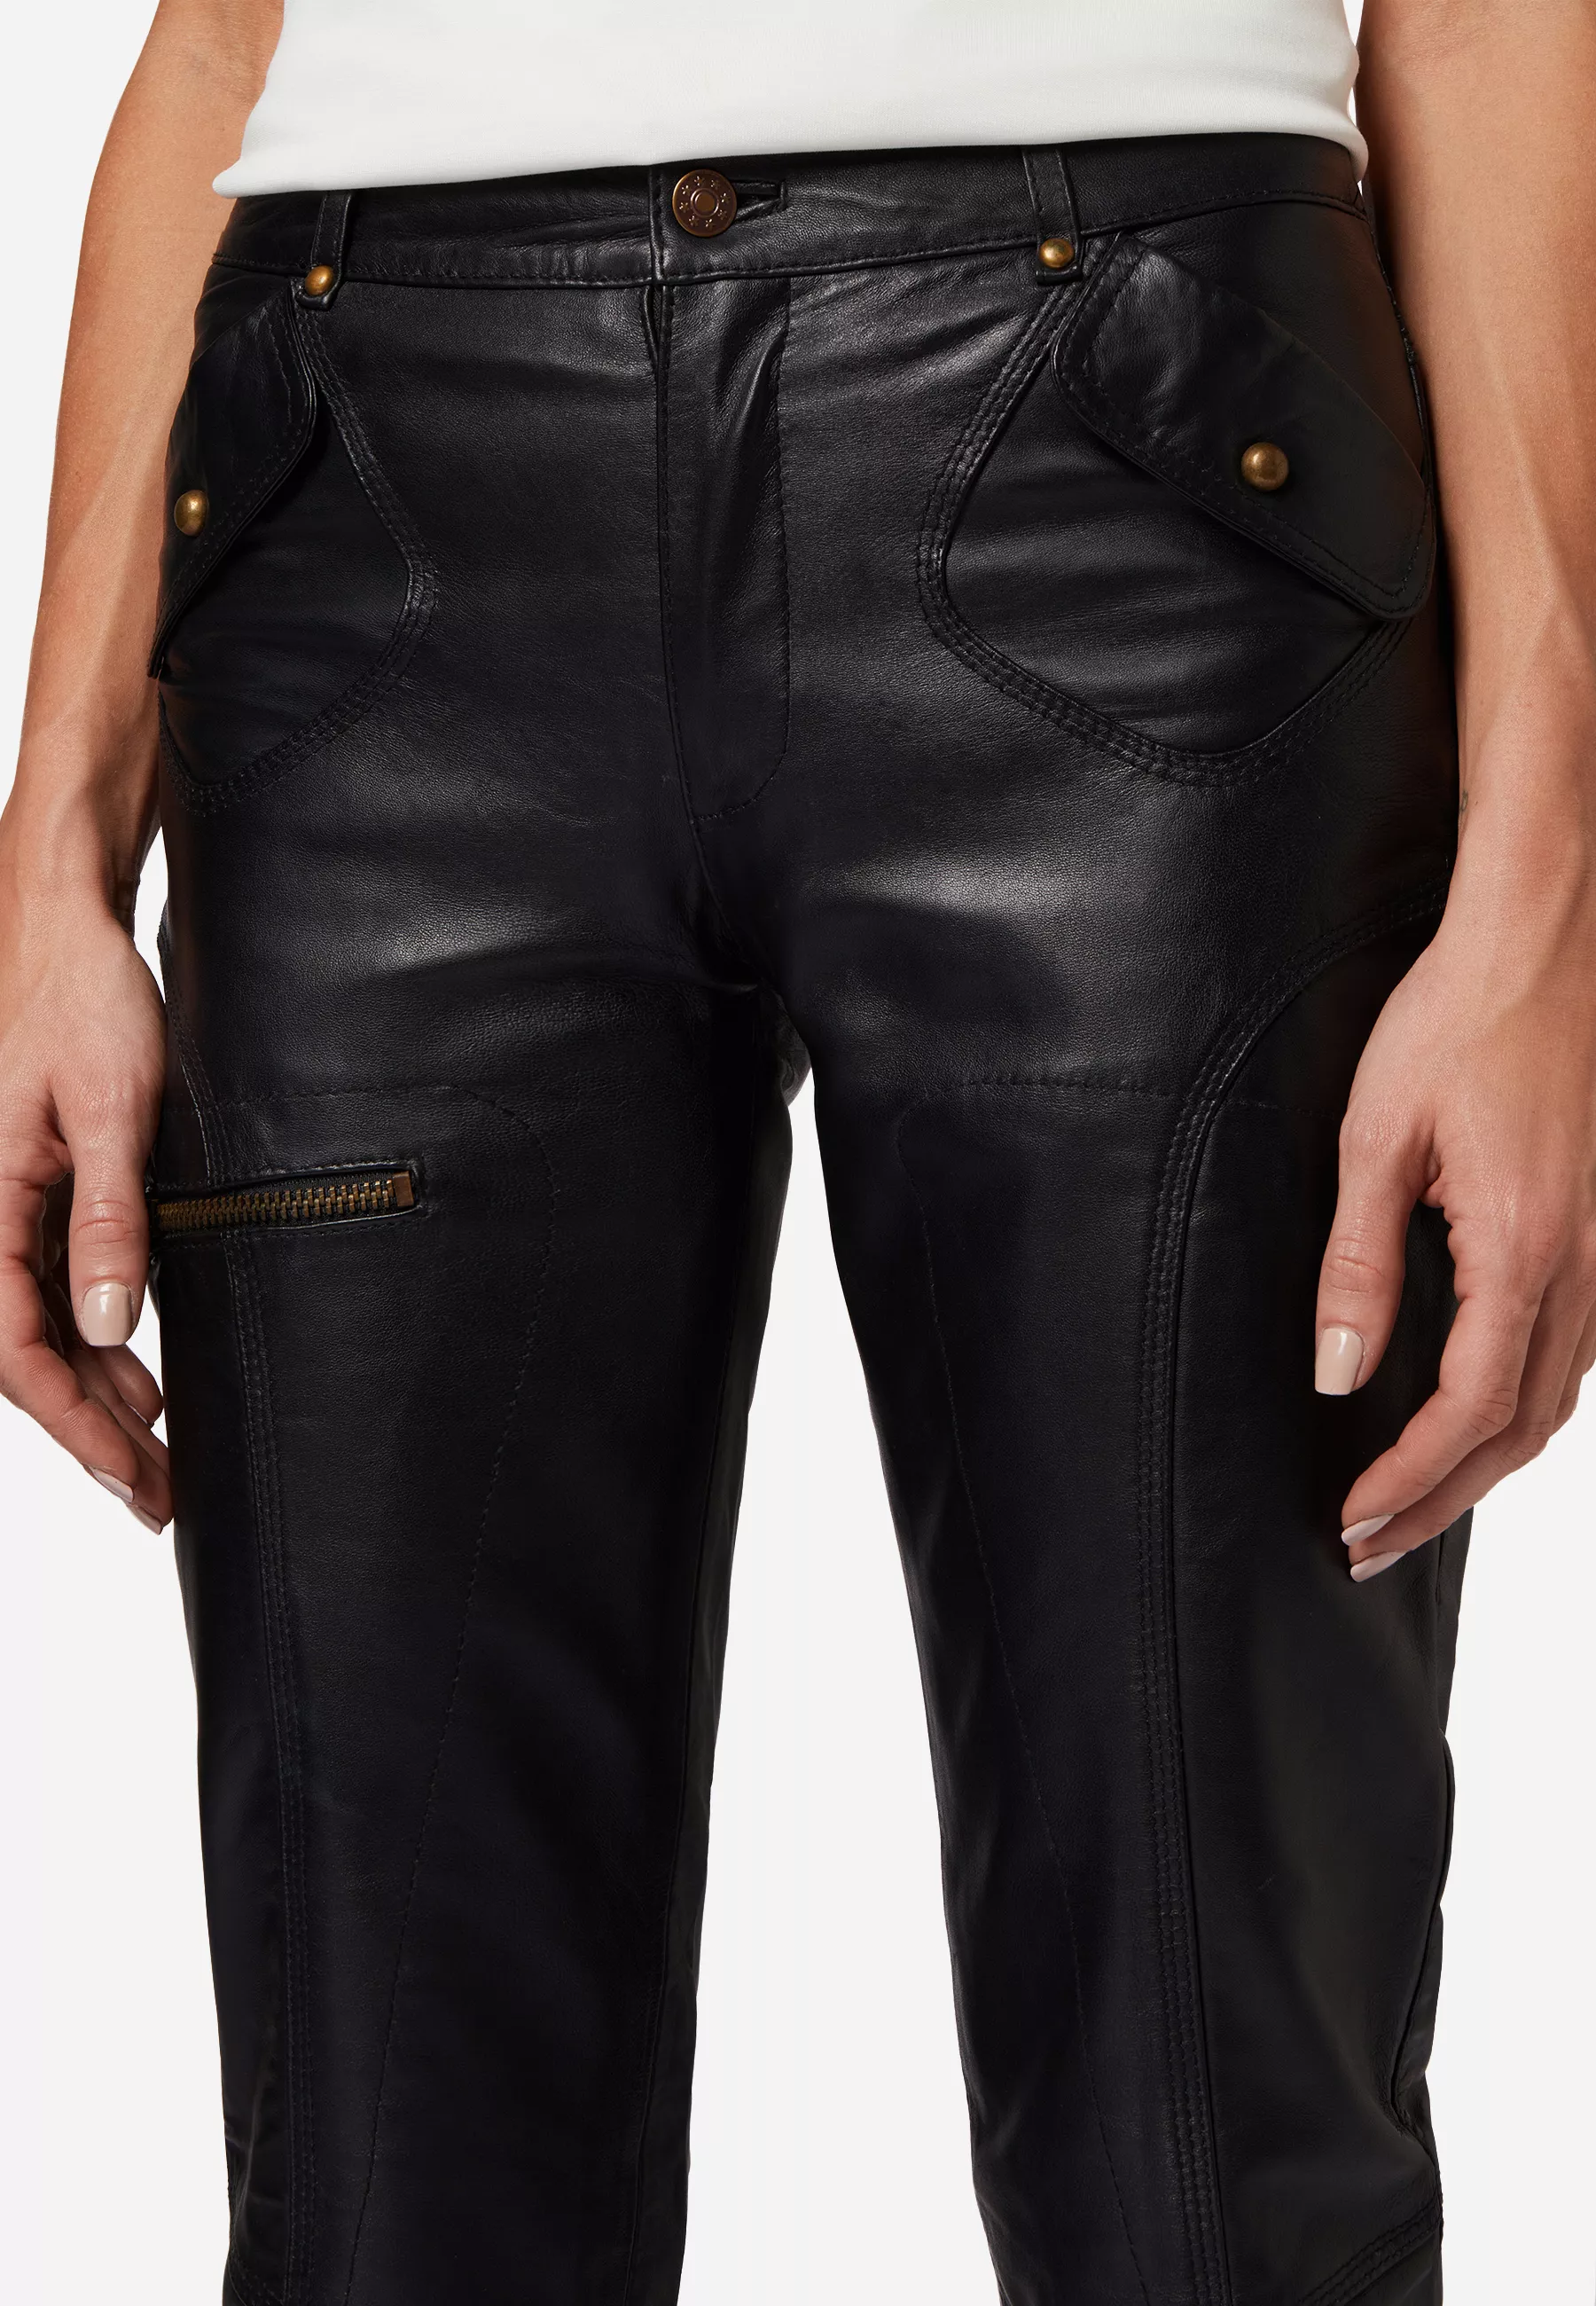 Damen Lederhose Inspire in Schwarz von Ricano, Detailansicht Nieten an den Gürtelschlaufen und abgesetzten Taschen am Model